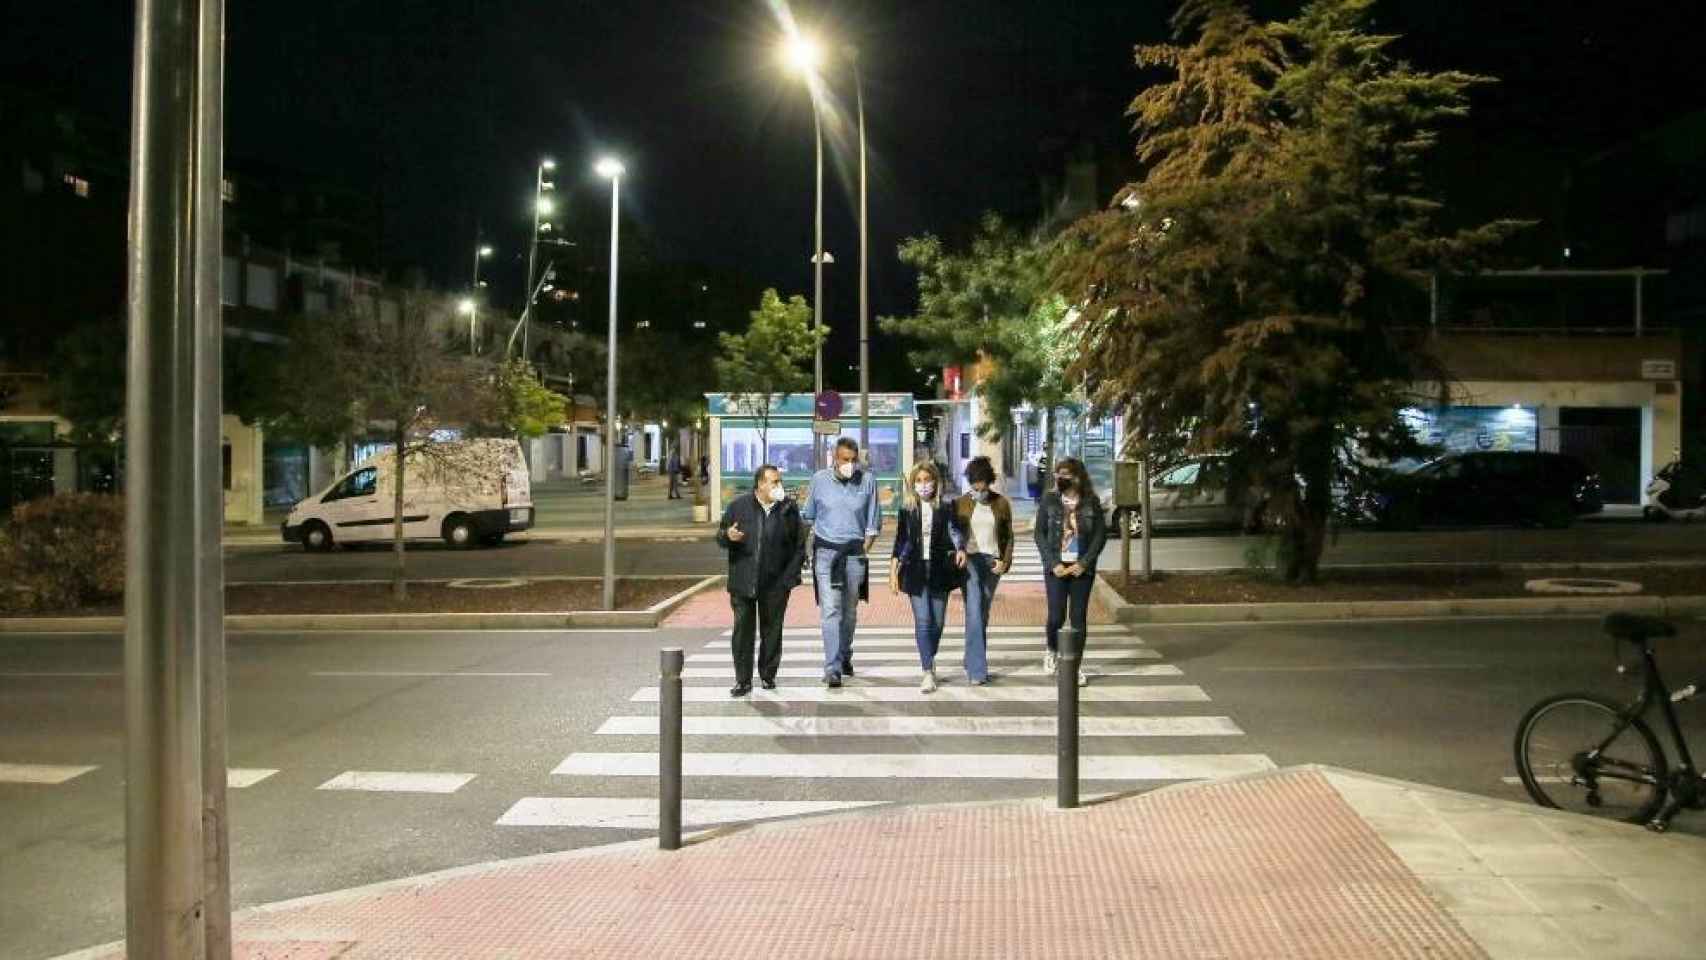 La alcaldesa de Toledo, Milagros Tolón, ha comprobado esta noche el nuevo alumbrado público de la avenida Río Guadarrama en el barrio del Polígono